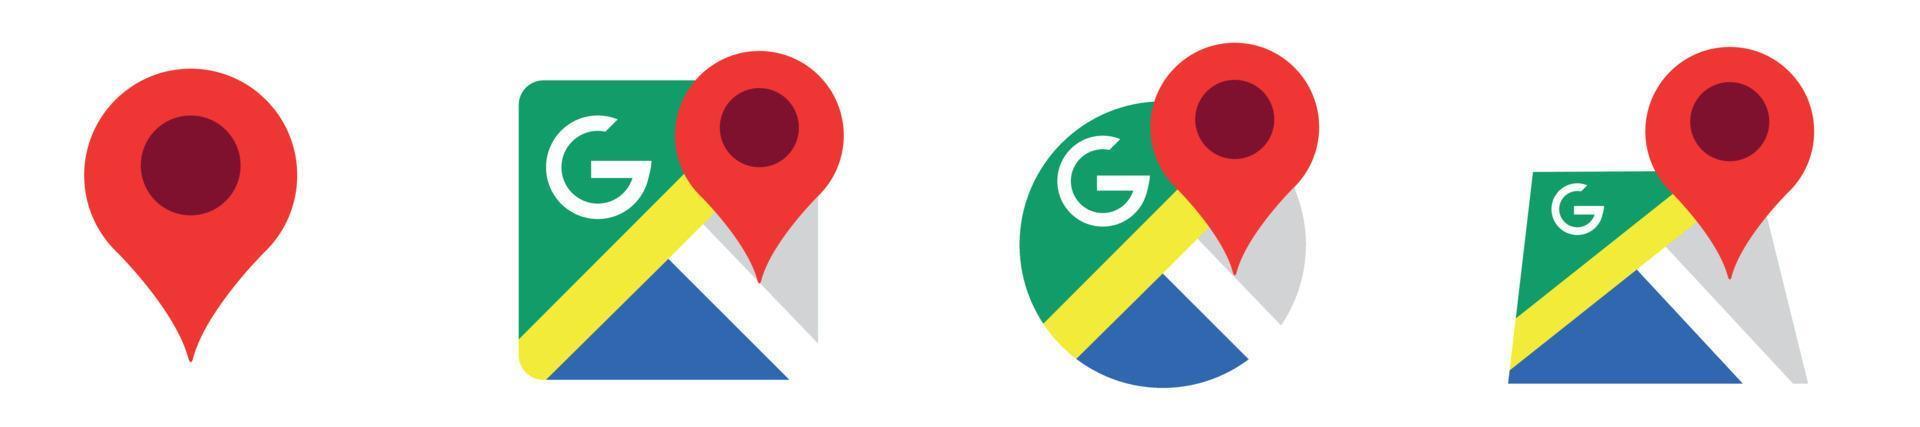 google maps ikonuppsättning, kartnålsmarkörer, platsikonsymbol, tecken för globalt positioneringssystem, vektorillustration vektor